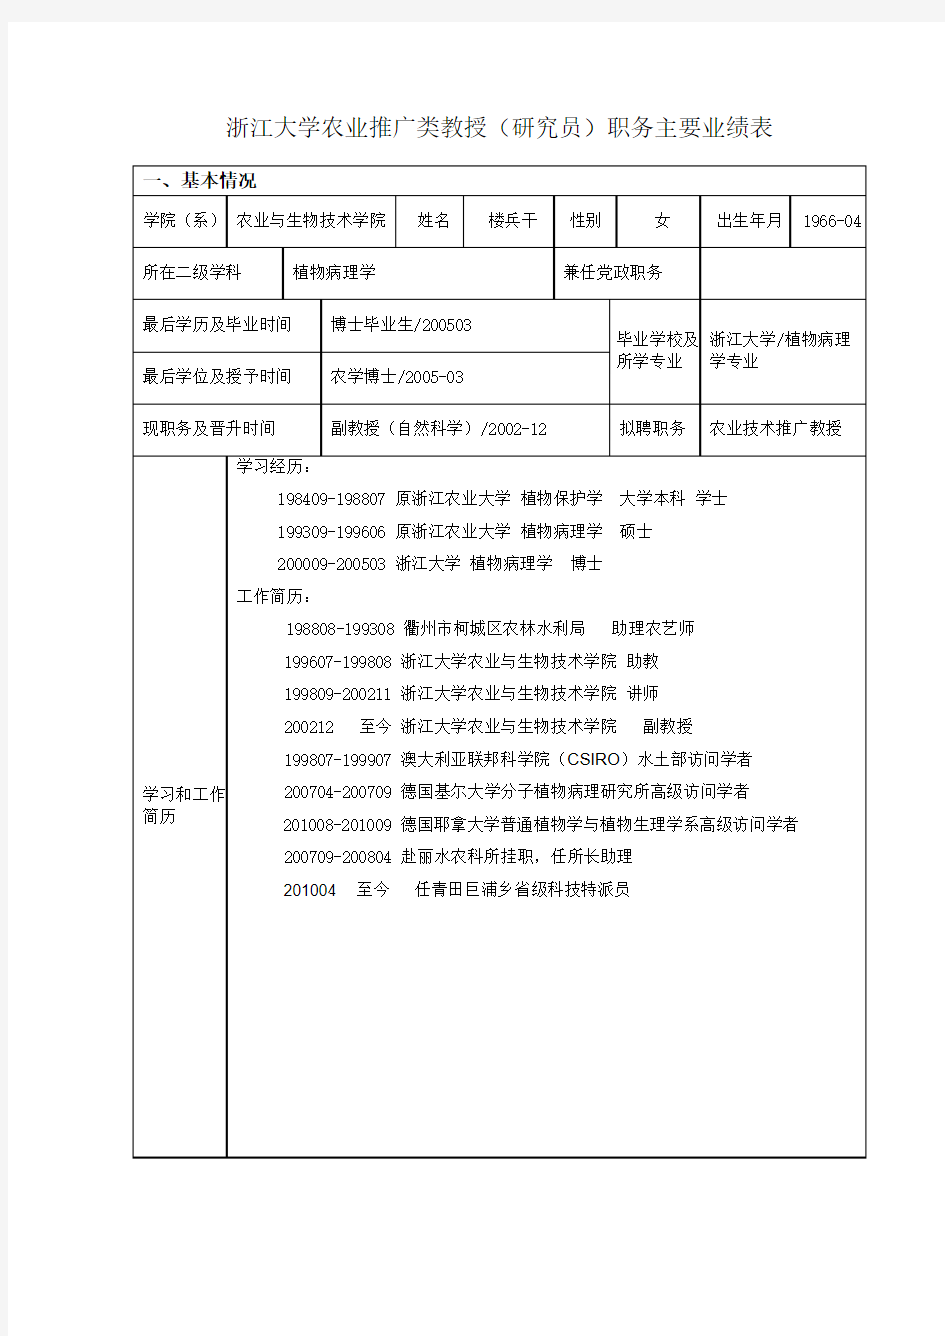 浙江大学农业推广类教授(研究员)职务主要业绩表